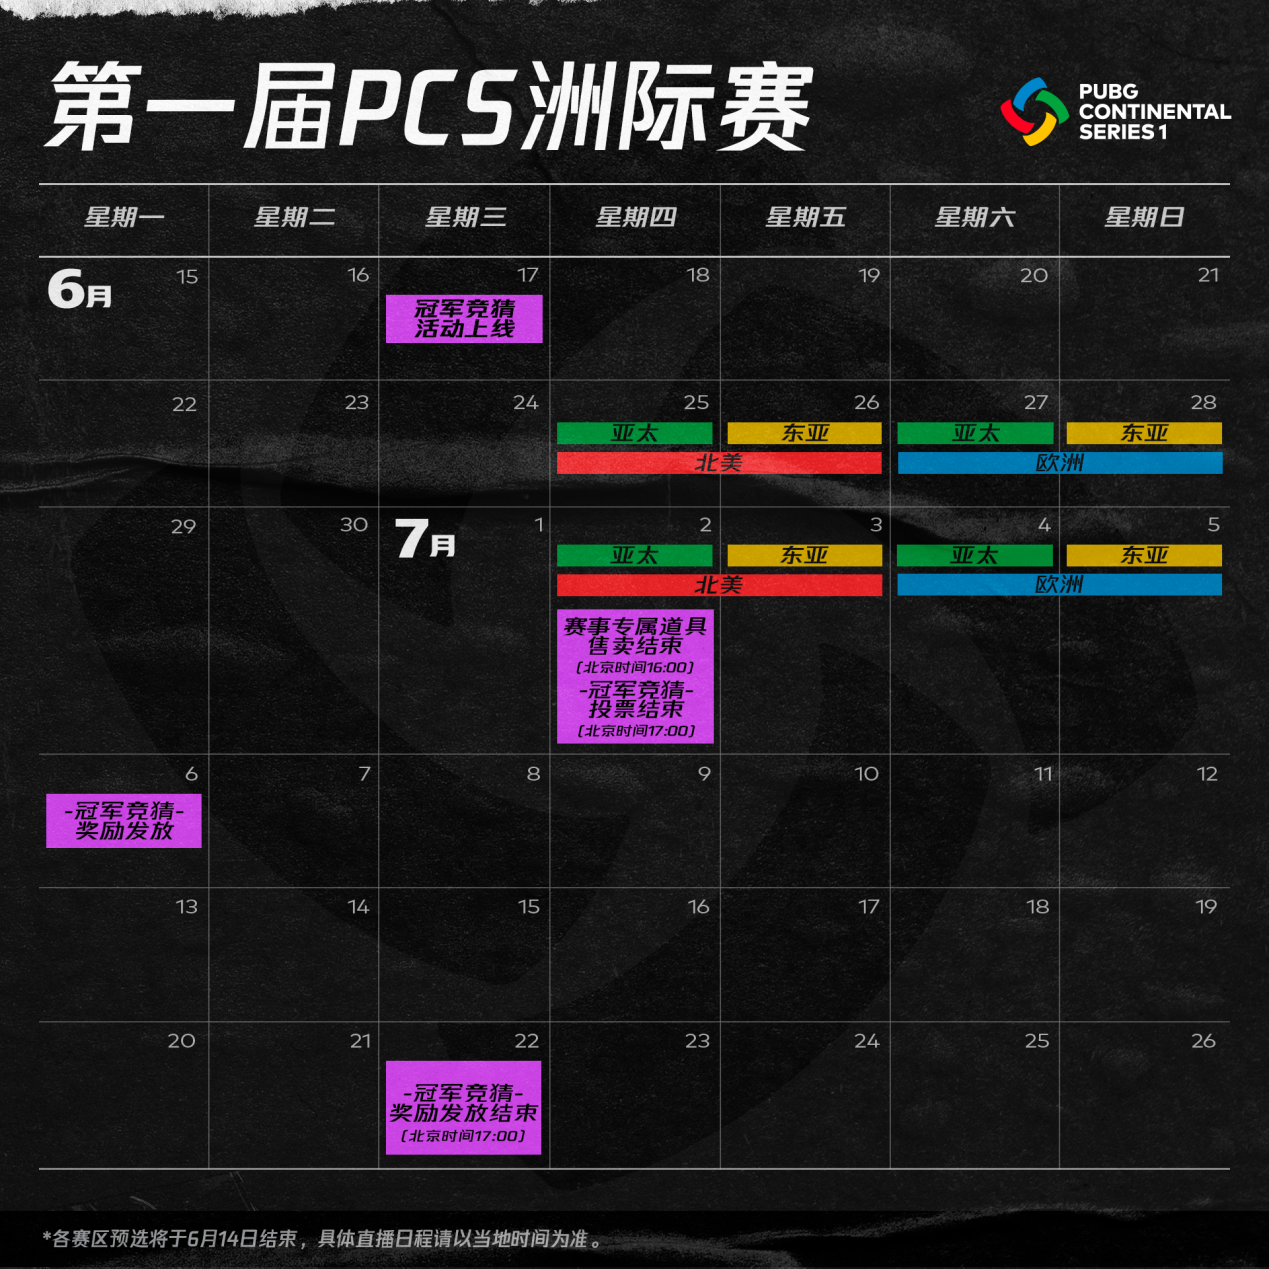 絕地求生PCS洲際賽定檔6.25 冠軍競猜專屬皮膚首曝